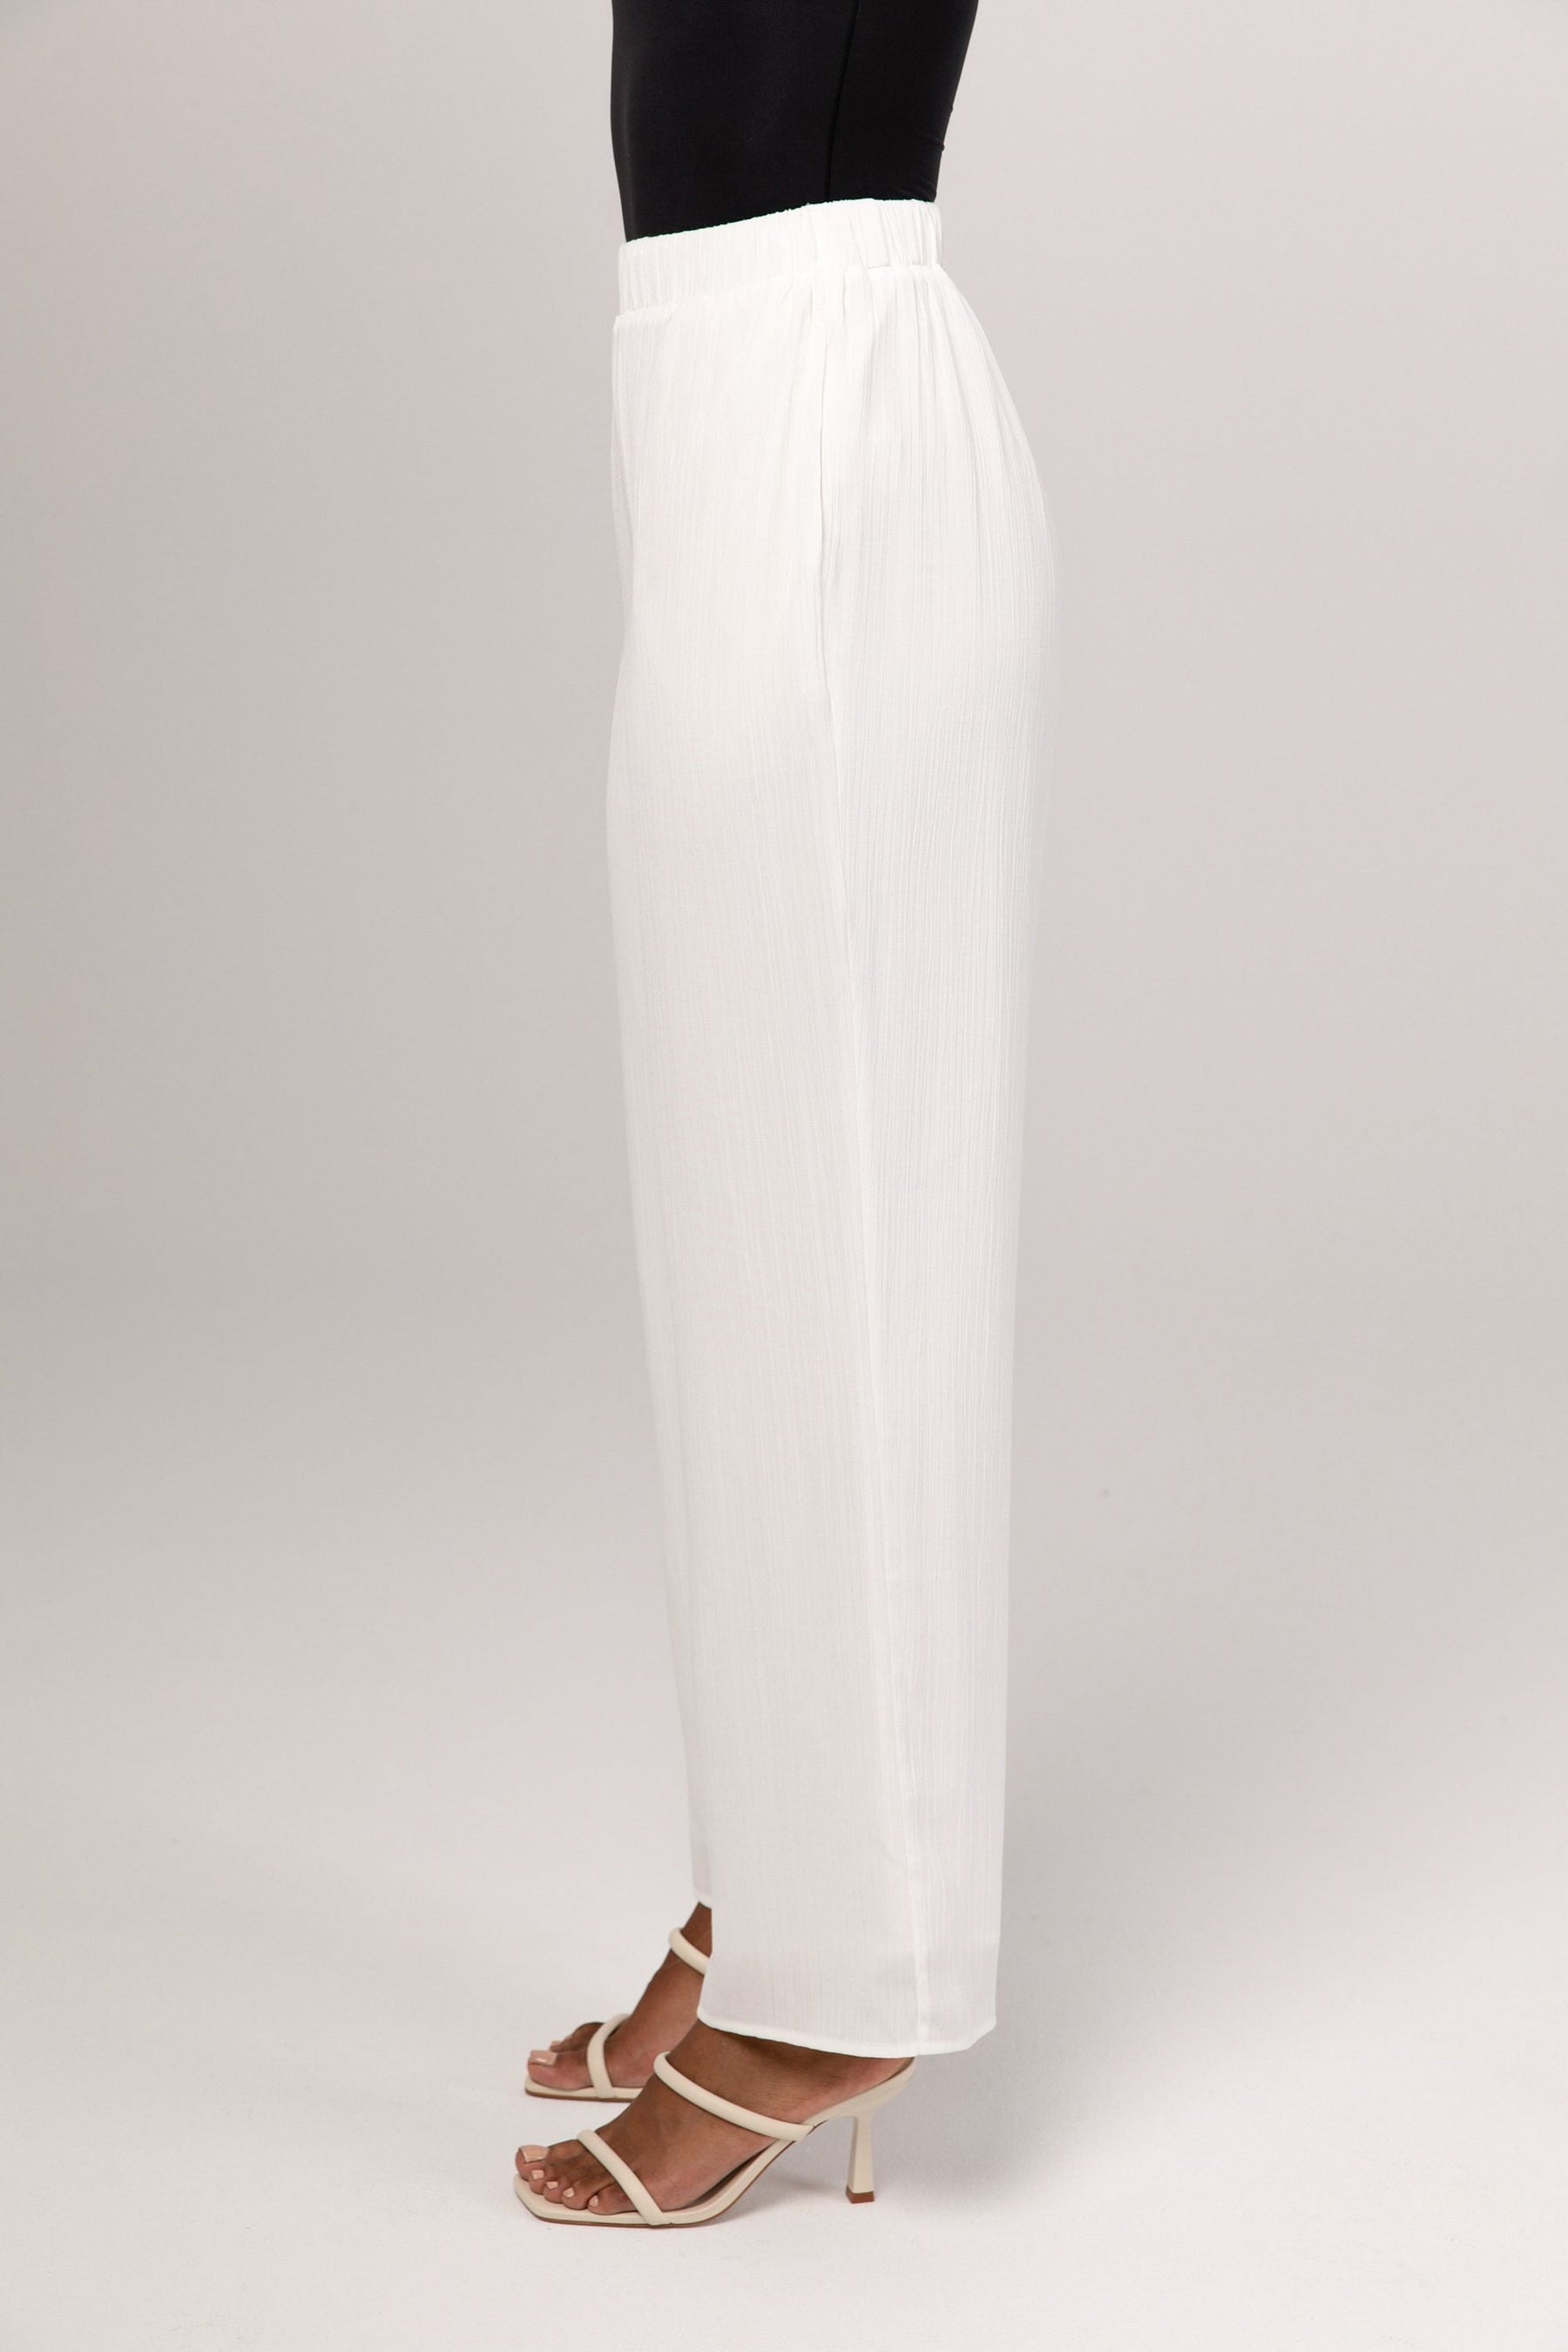 Nashwa Textured Rayon Wide Leg Pants - White epschoolboard 